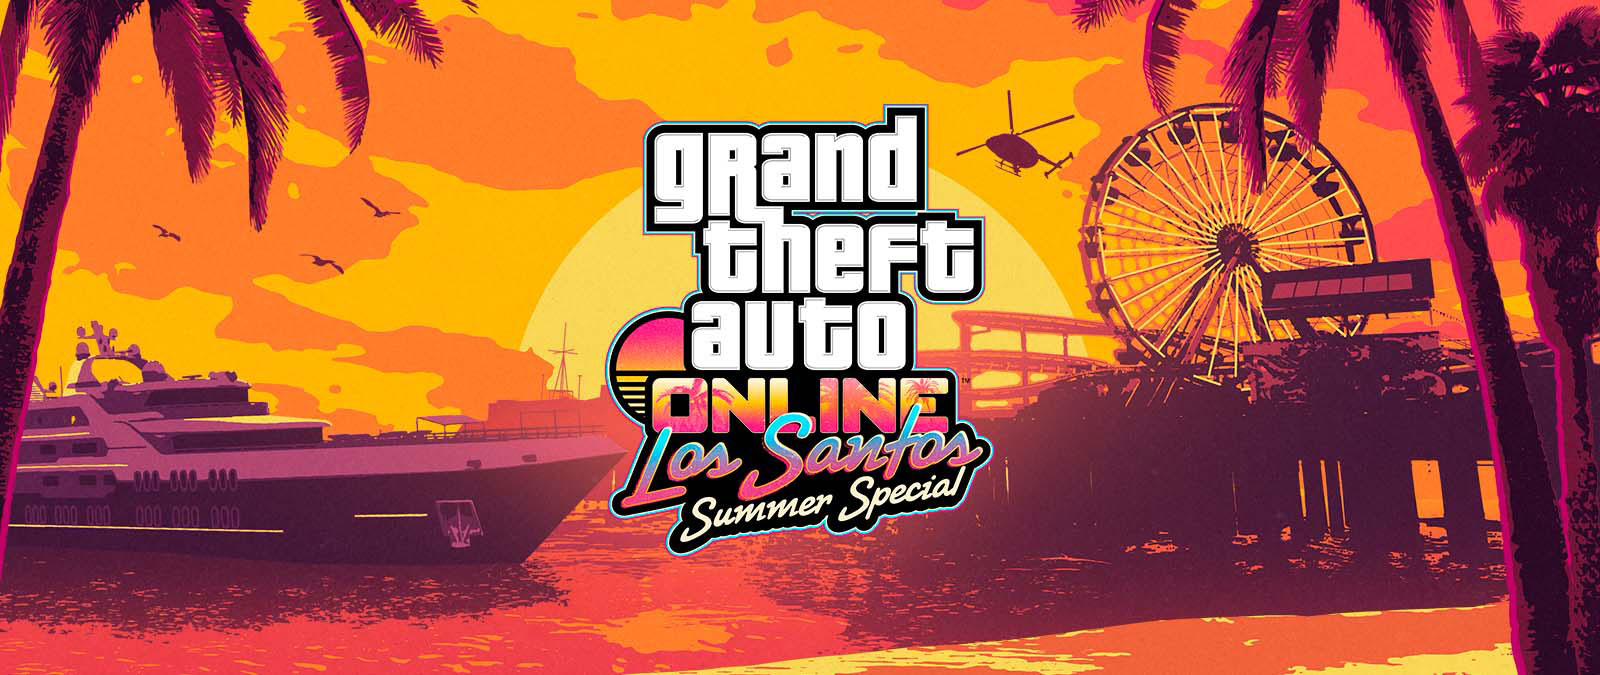 Grand Theft Auto Online. Los Santos Summer Special. Jachta, ruské koleso a helikoptéra pri západe slnka